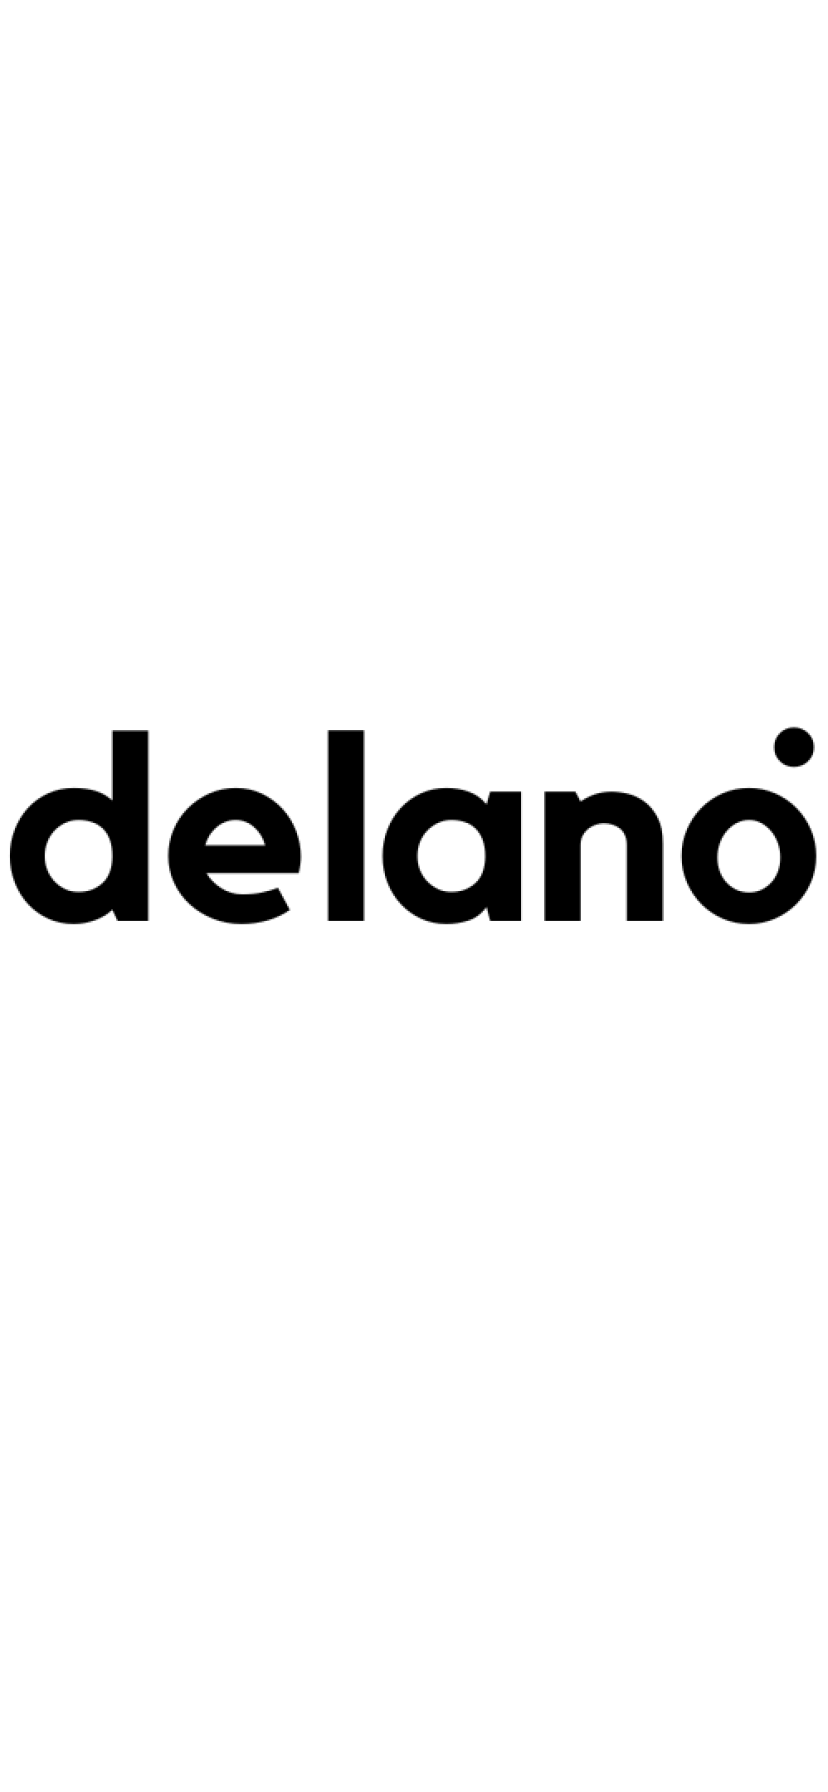 delano.org domain name for sale